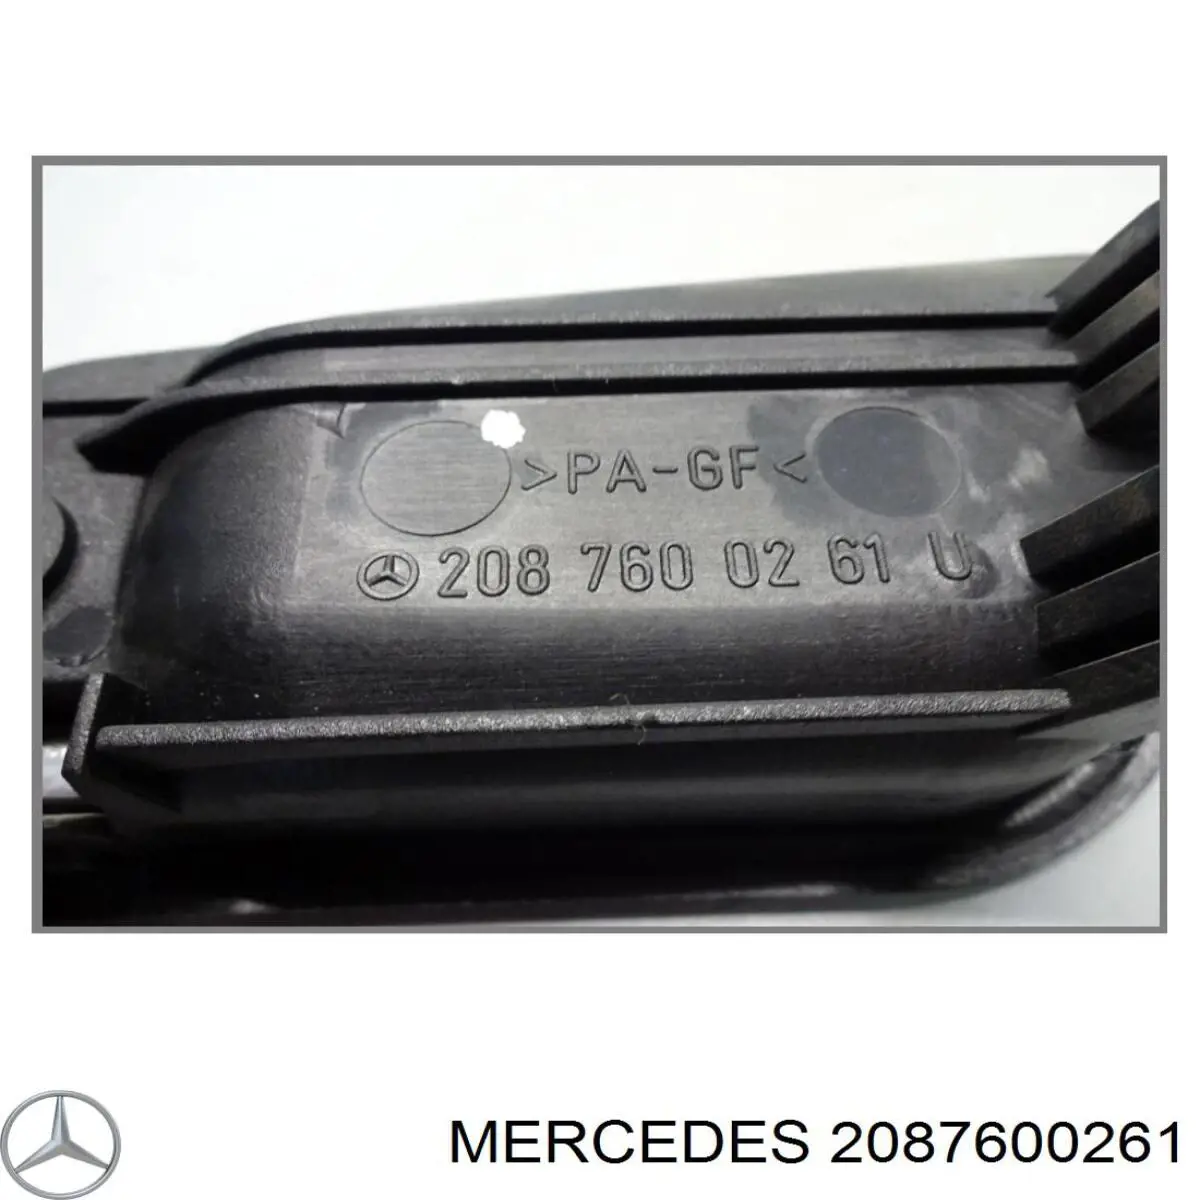 2087600261 Mercedes manecilla de puerta, equipamiento habitáculo, delantera derecha